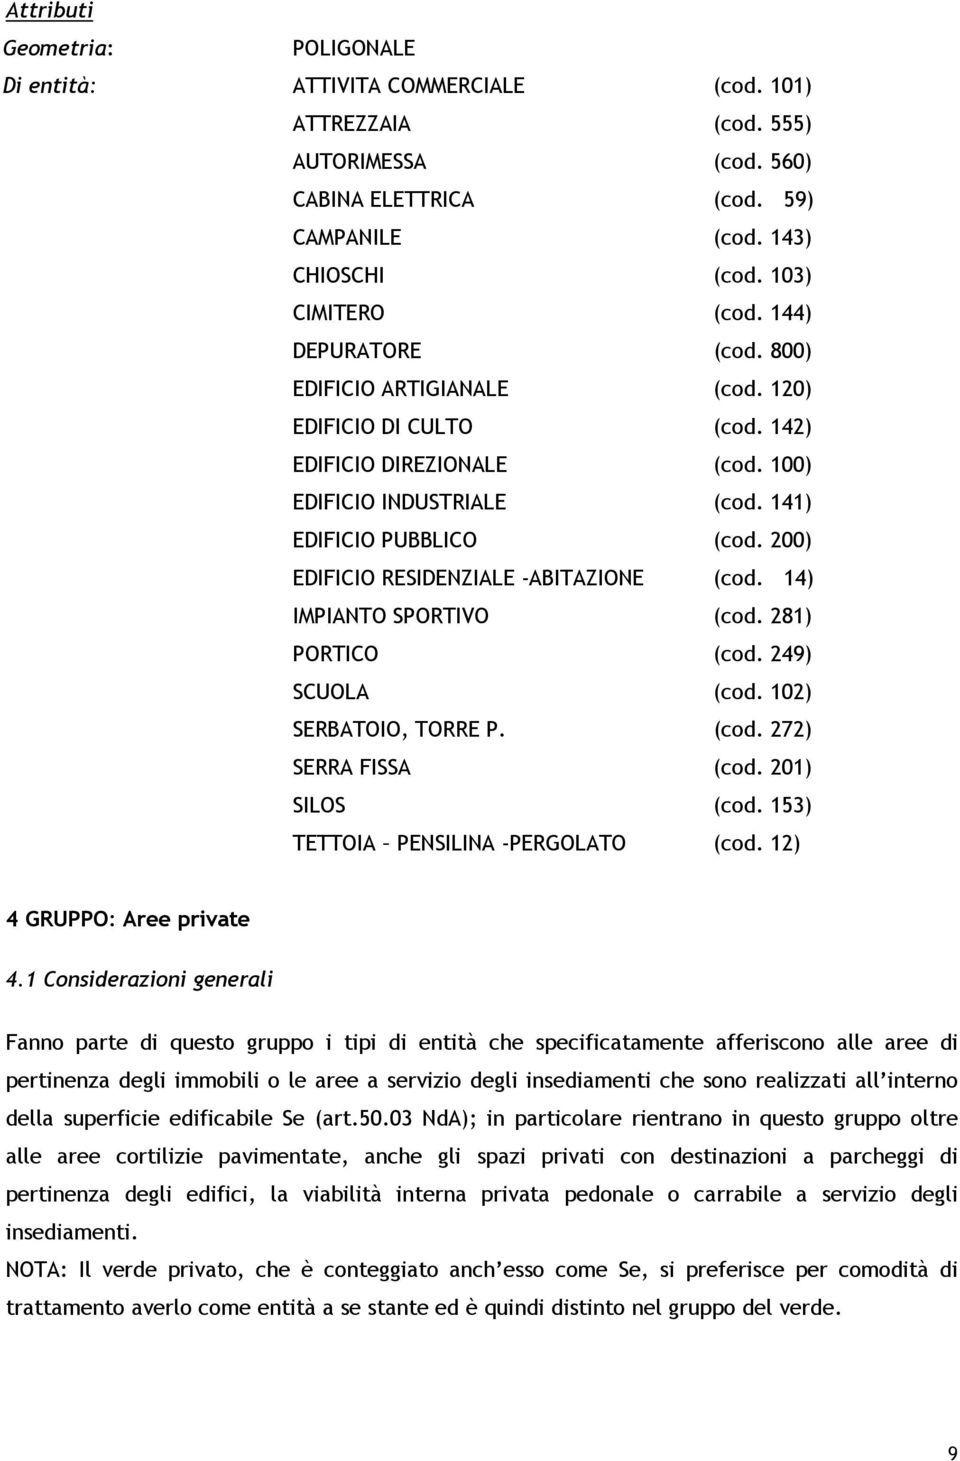 200) EDIFICIO RESIDENZIALE -ABITAZIONE (cod. 14) IMPIANTO SPORTIVO (cod. 281) PORTICO (cod. 249) SCUOLA (cod. 102) SERBATOIO, TORRE P. (cod. 272) SERRA FISSA (cod. 201) SILOS (cod.